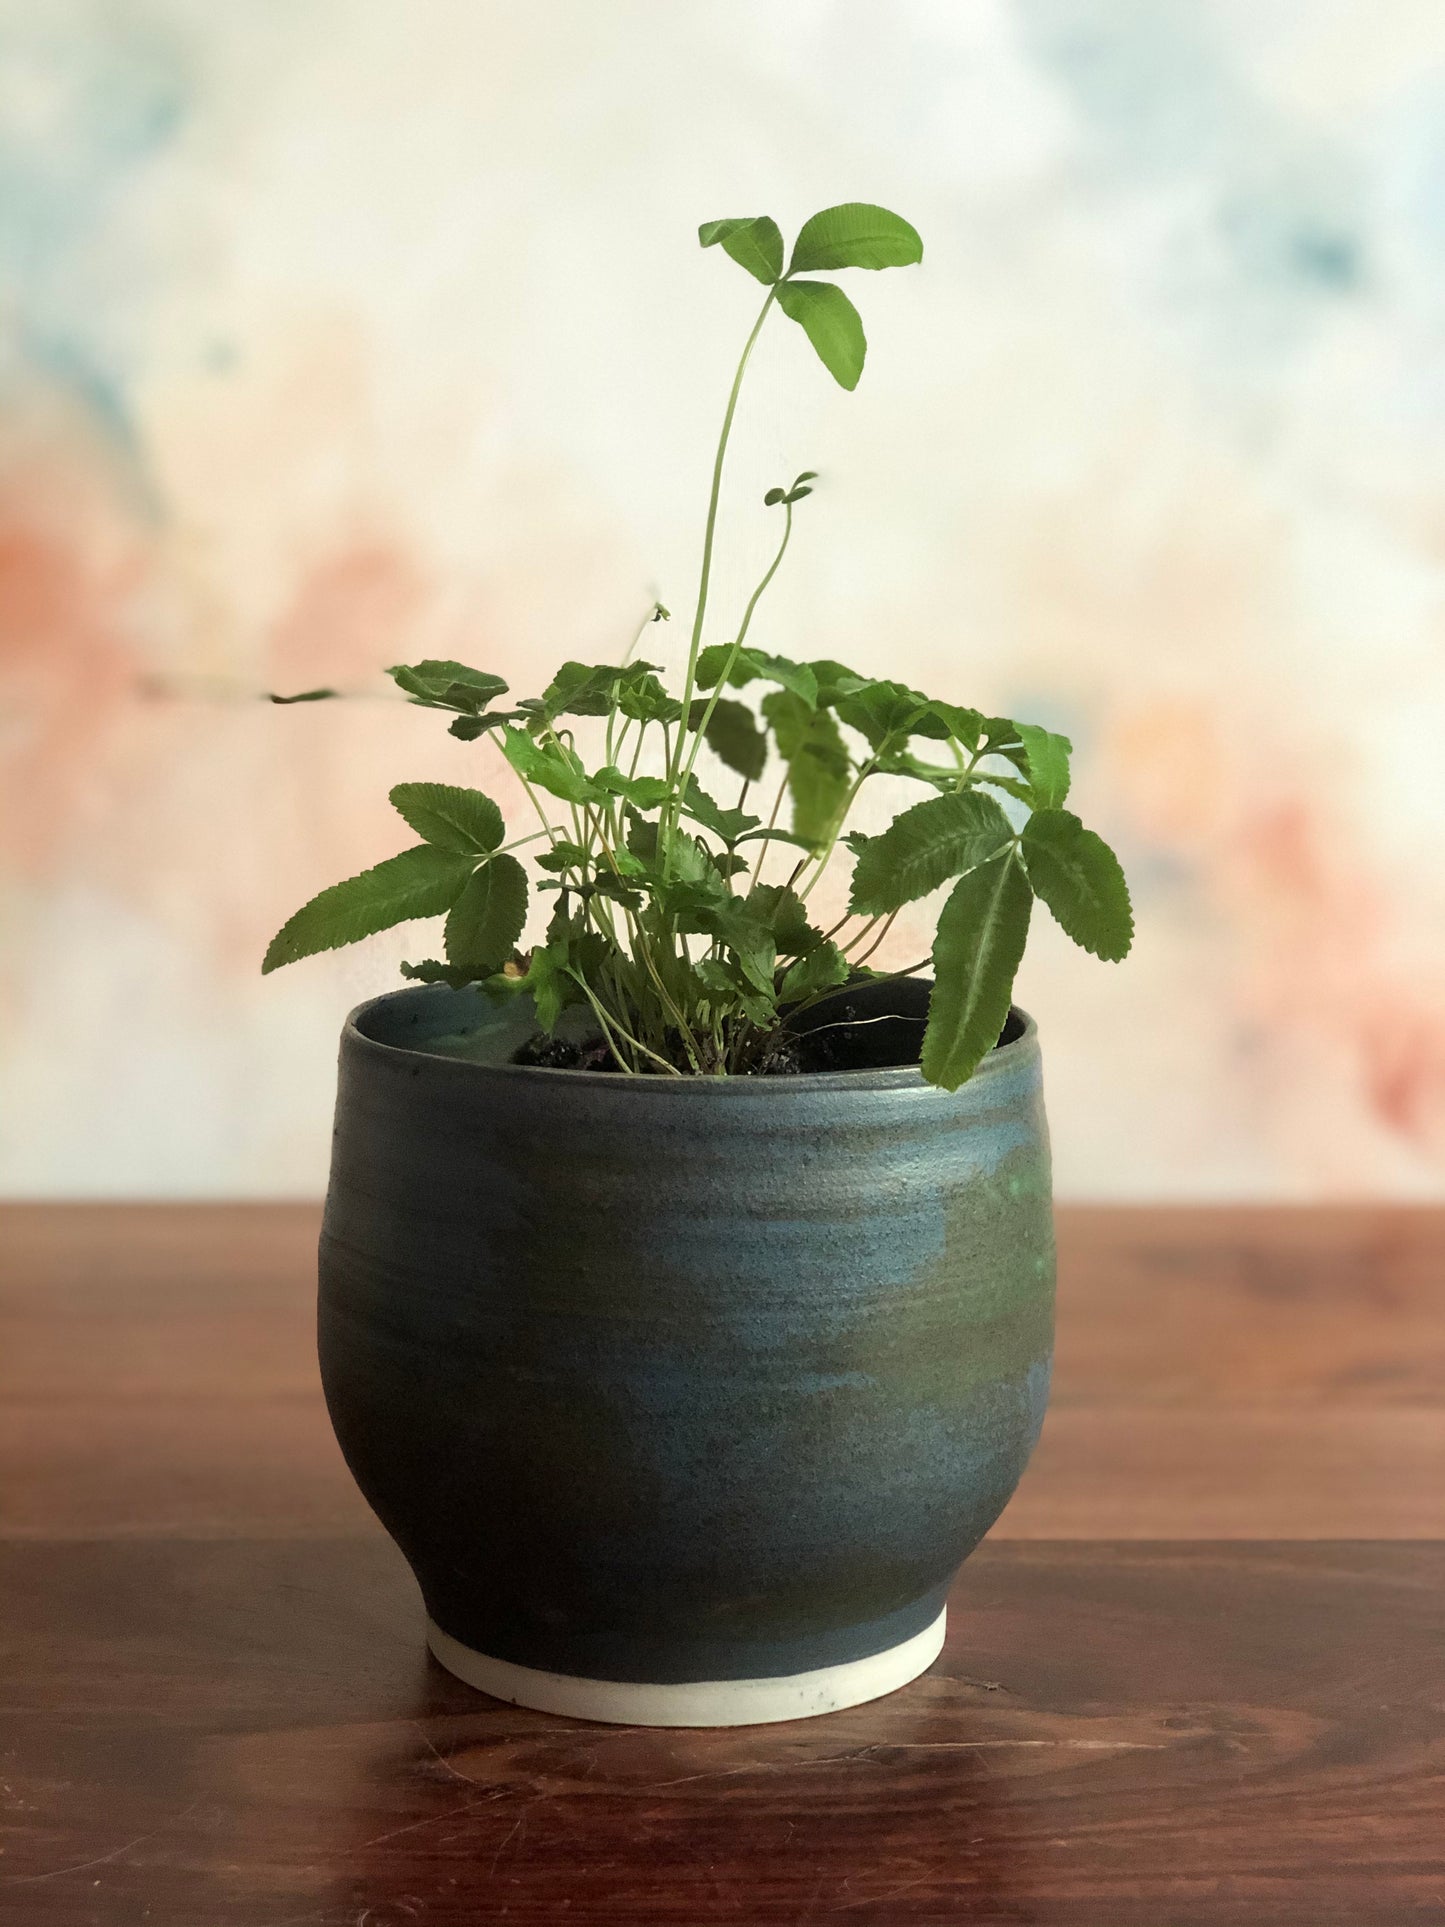 Teal green planter or vase no.2